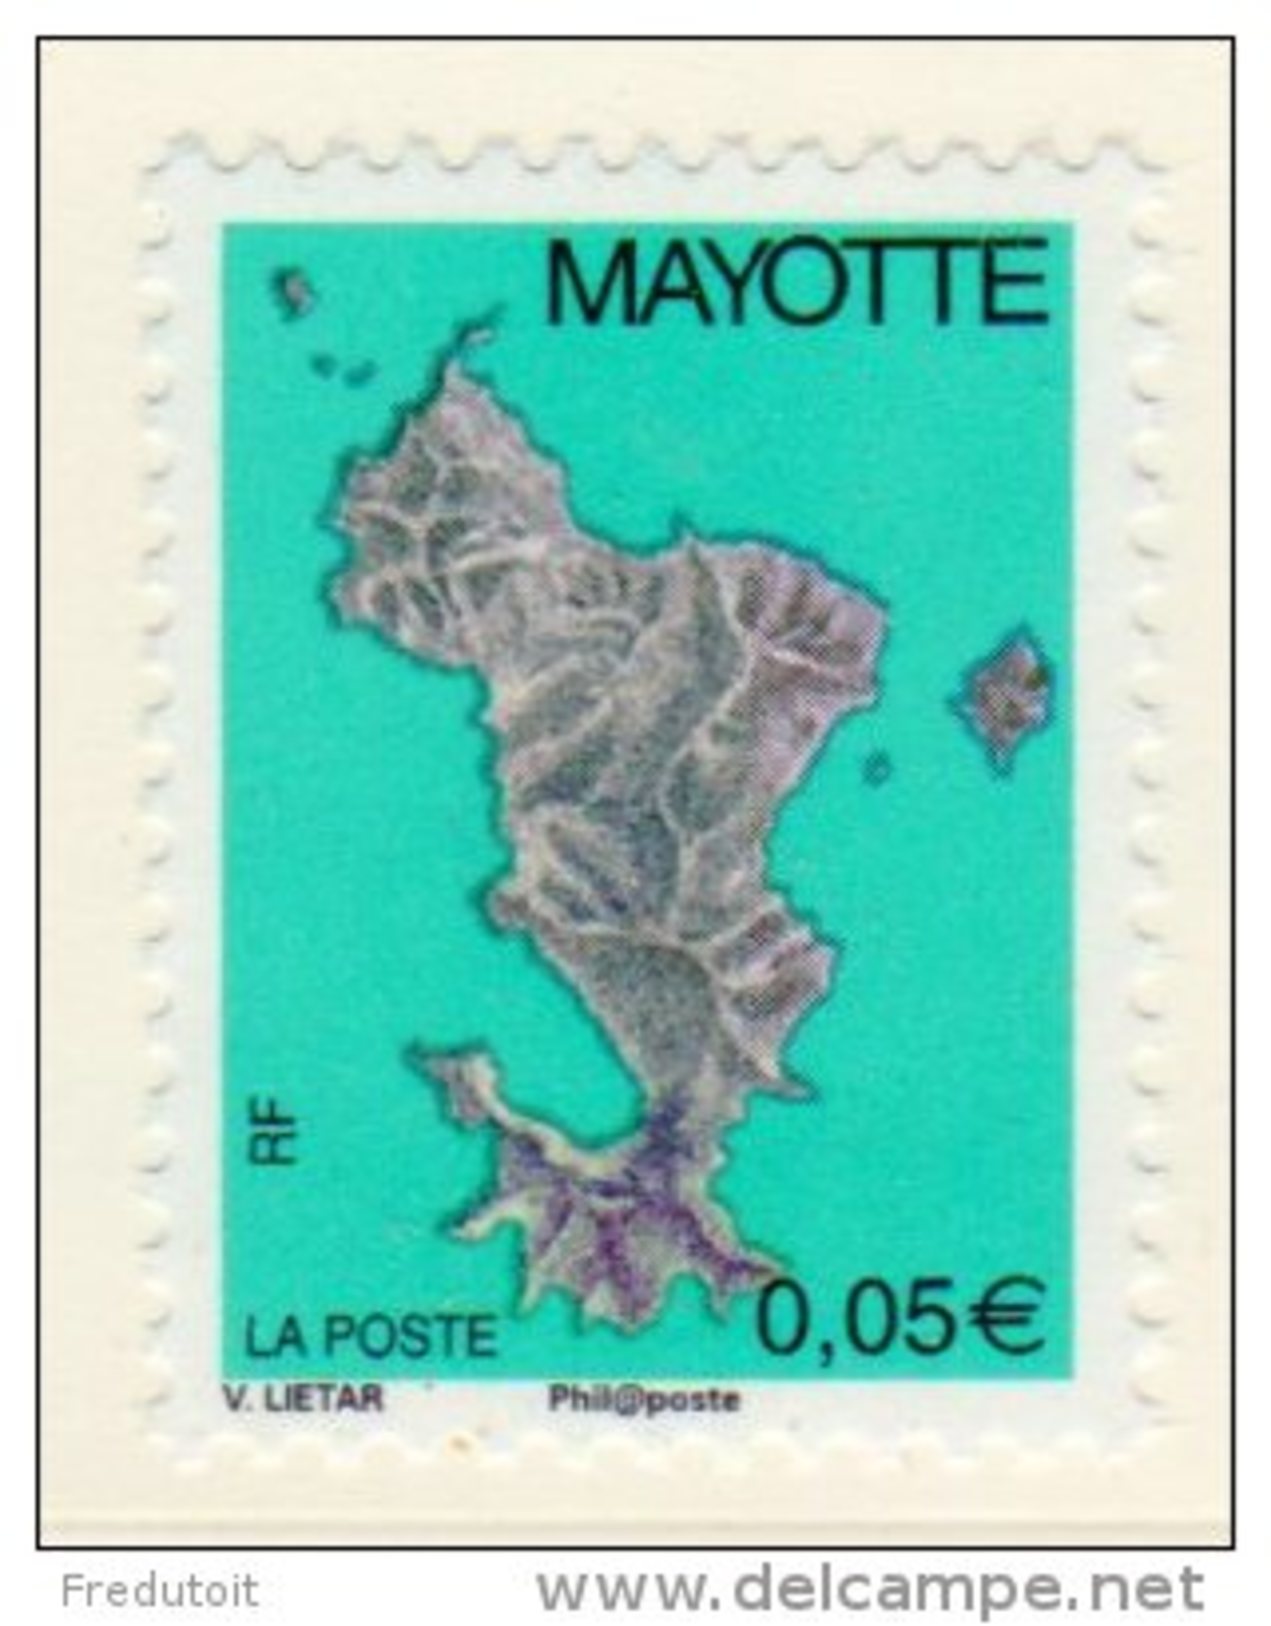 MAYOTTE -  2004 - N° 158a  ** 0,05c (phil@poste) - Unused Stamps